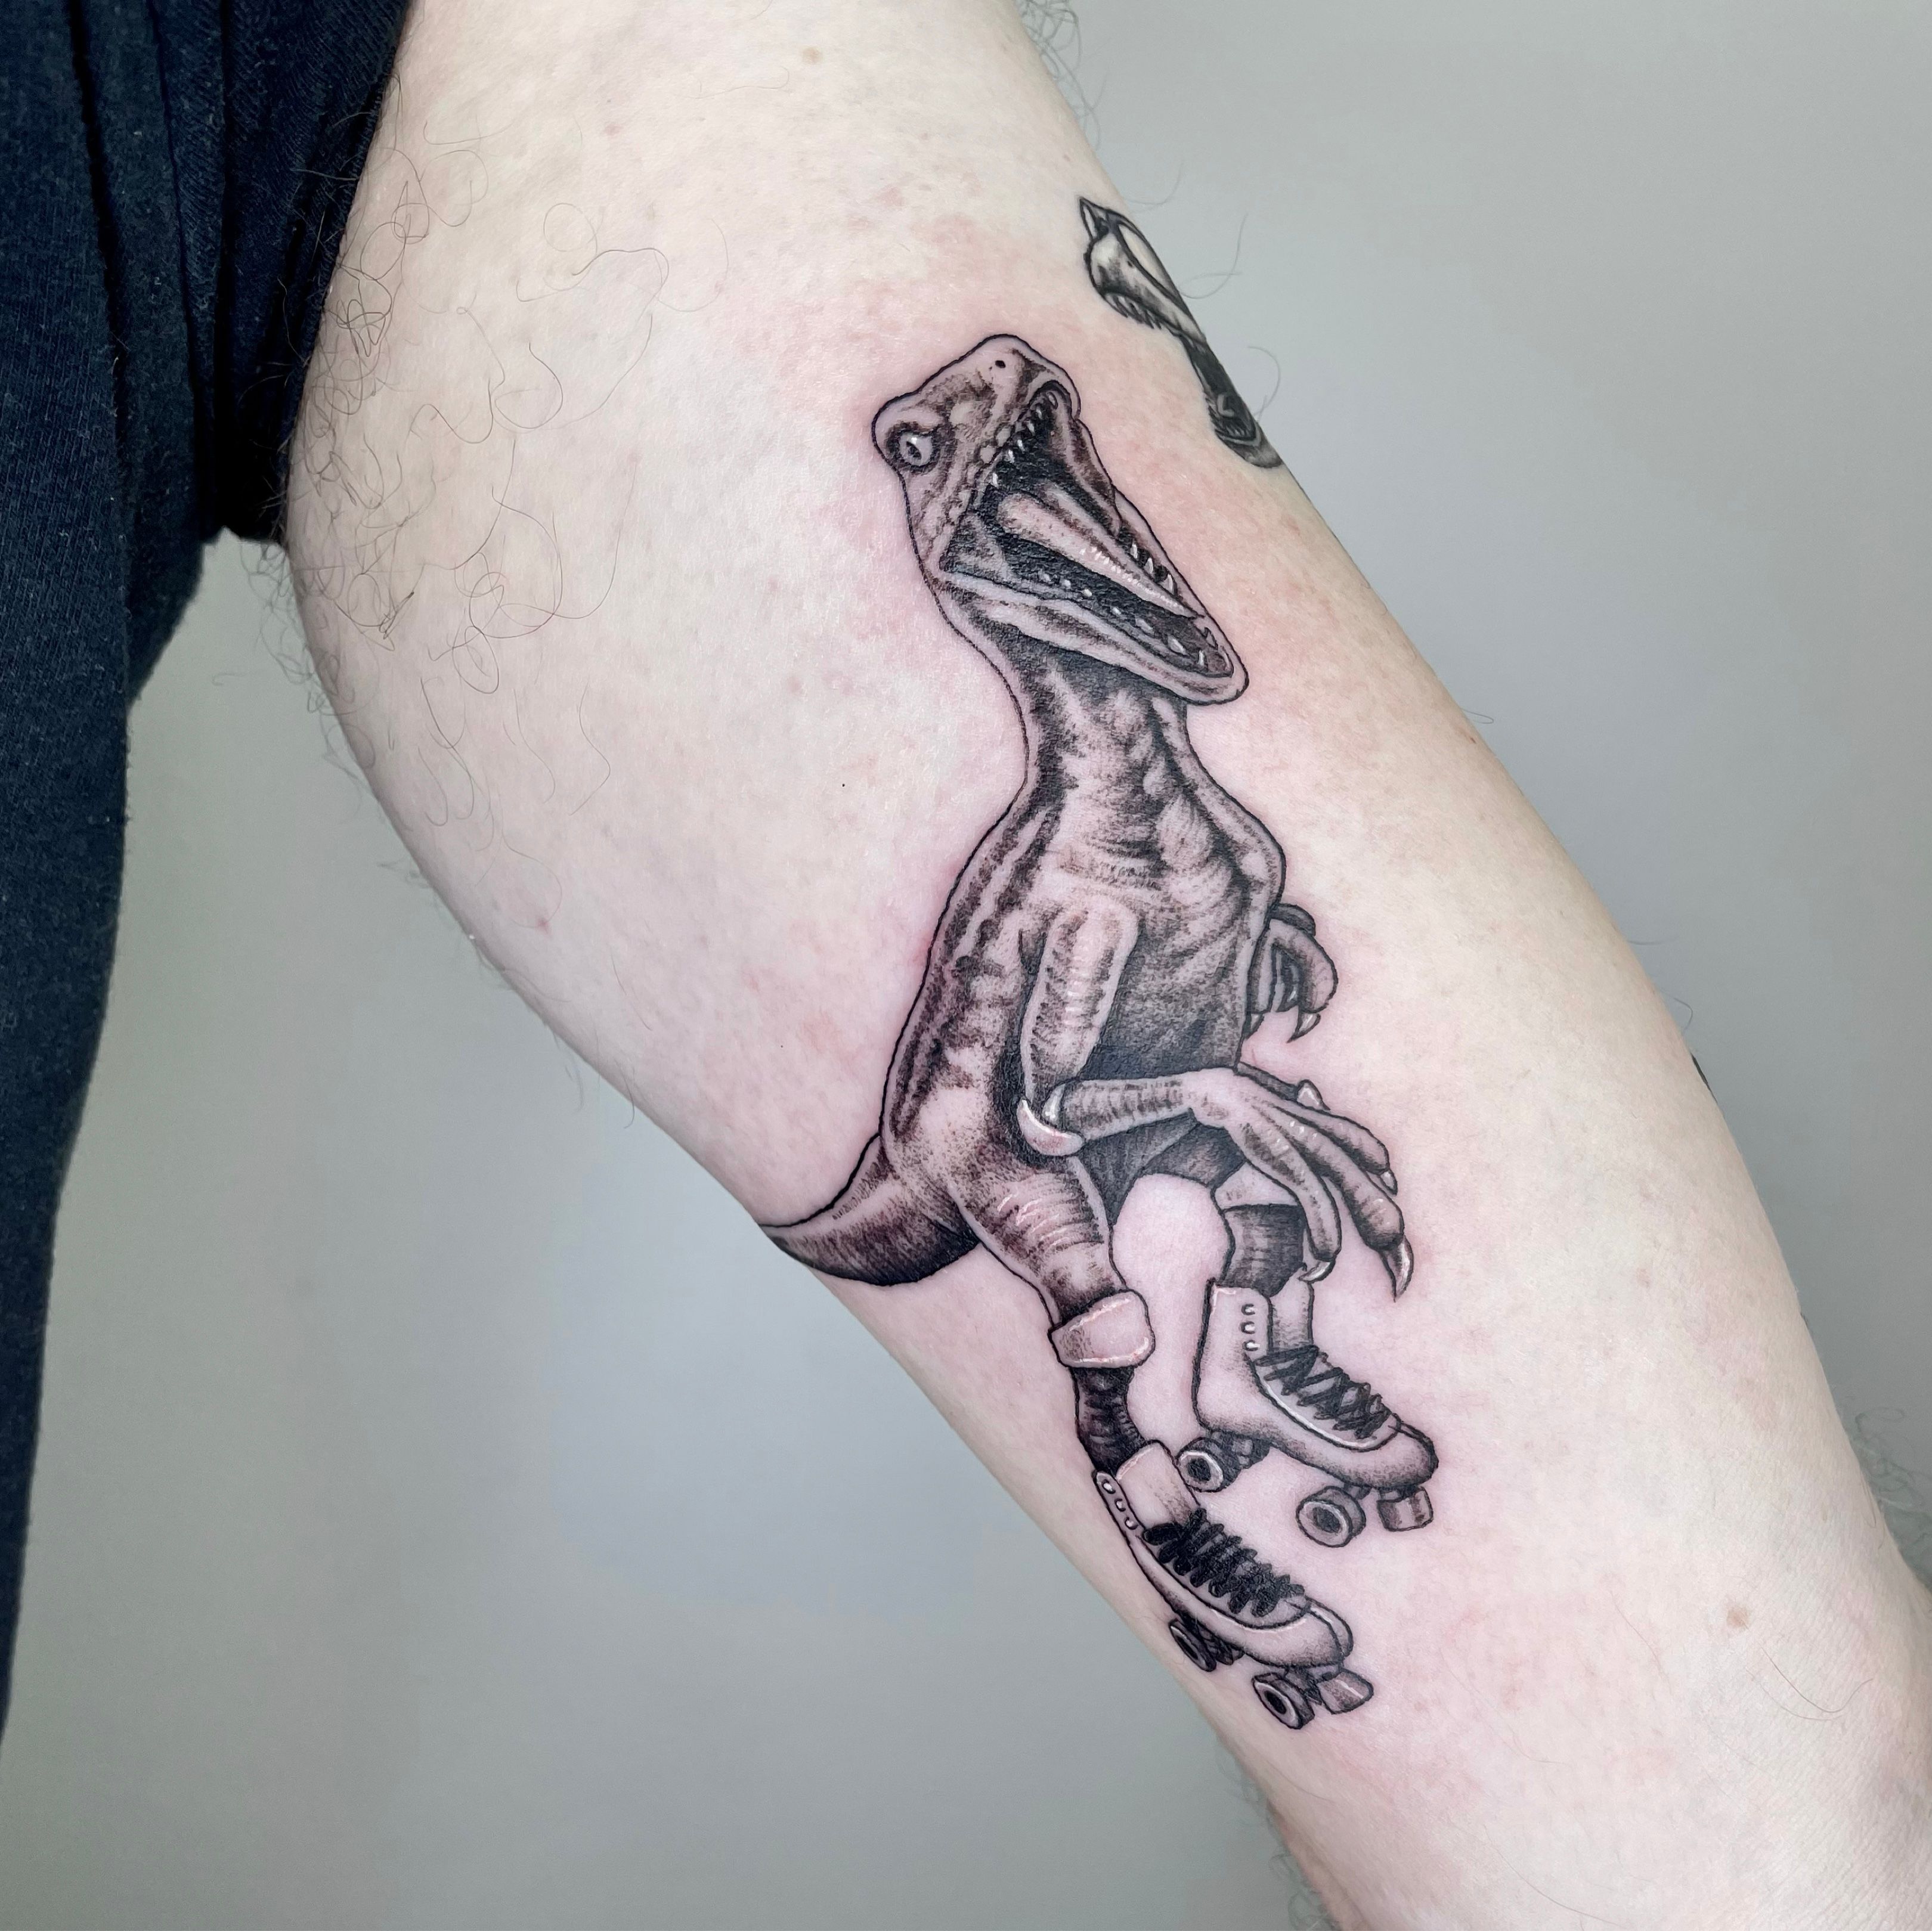 Beta hugs a raptor tattoo by DracoAwesomeness on DeviantArt